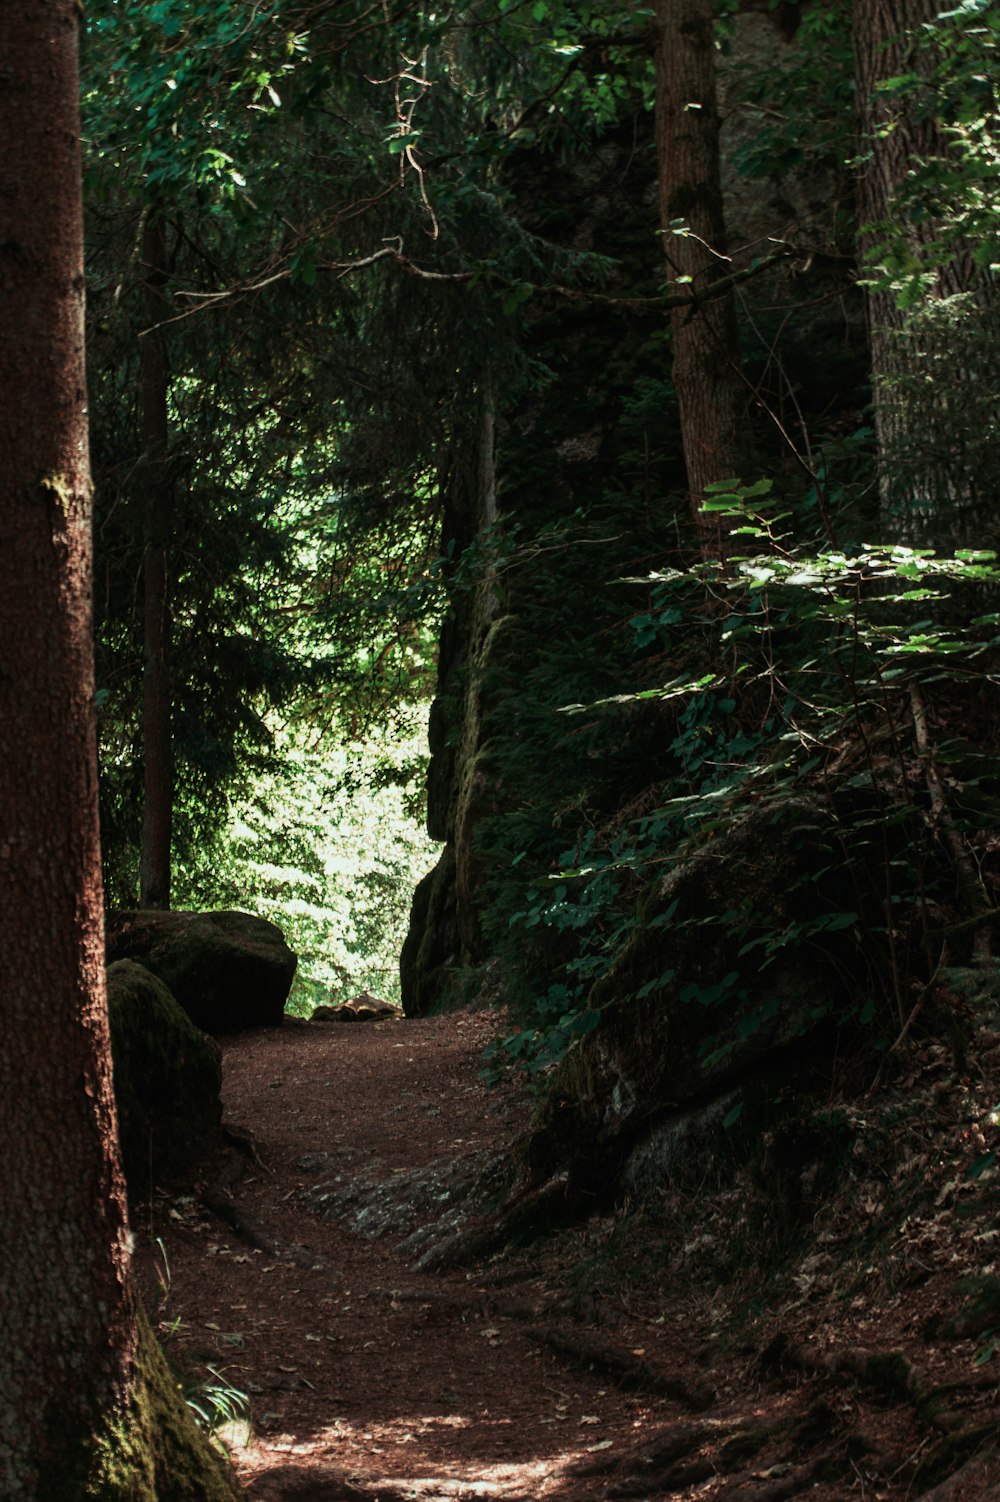 a path through a forest